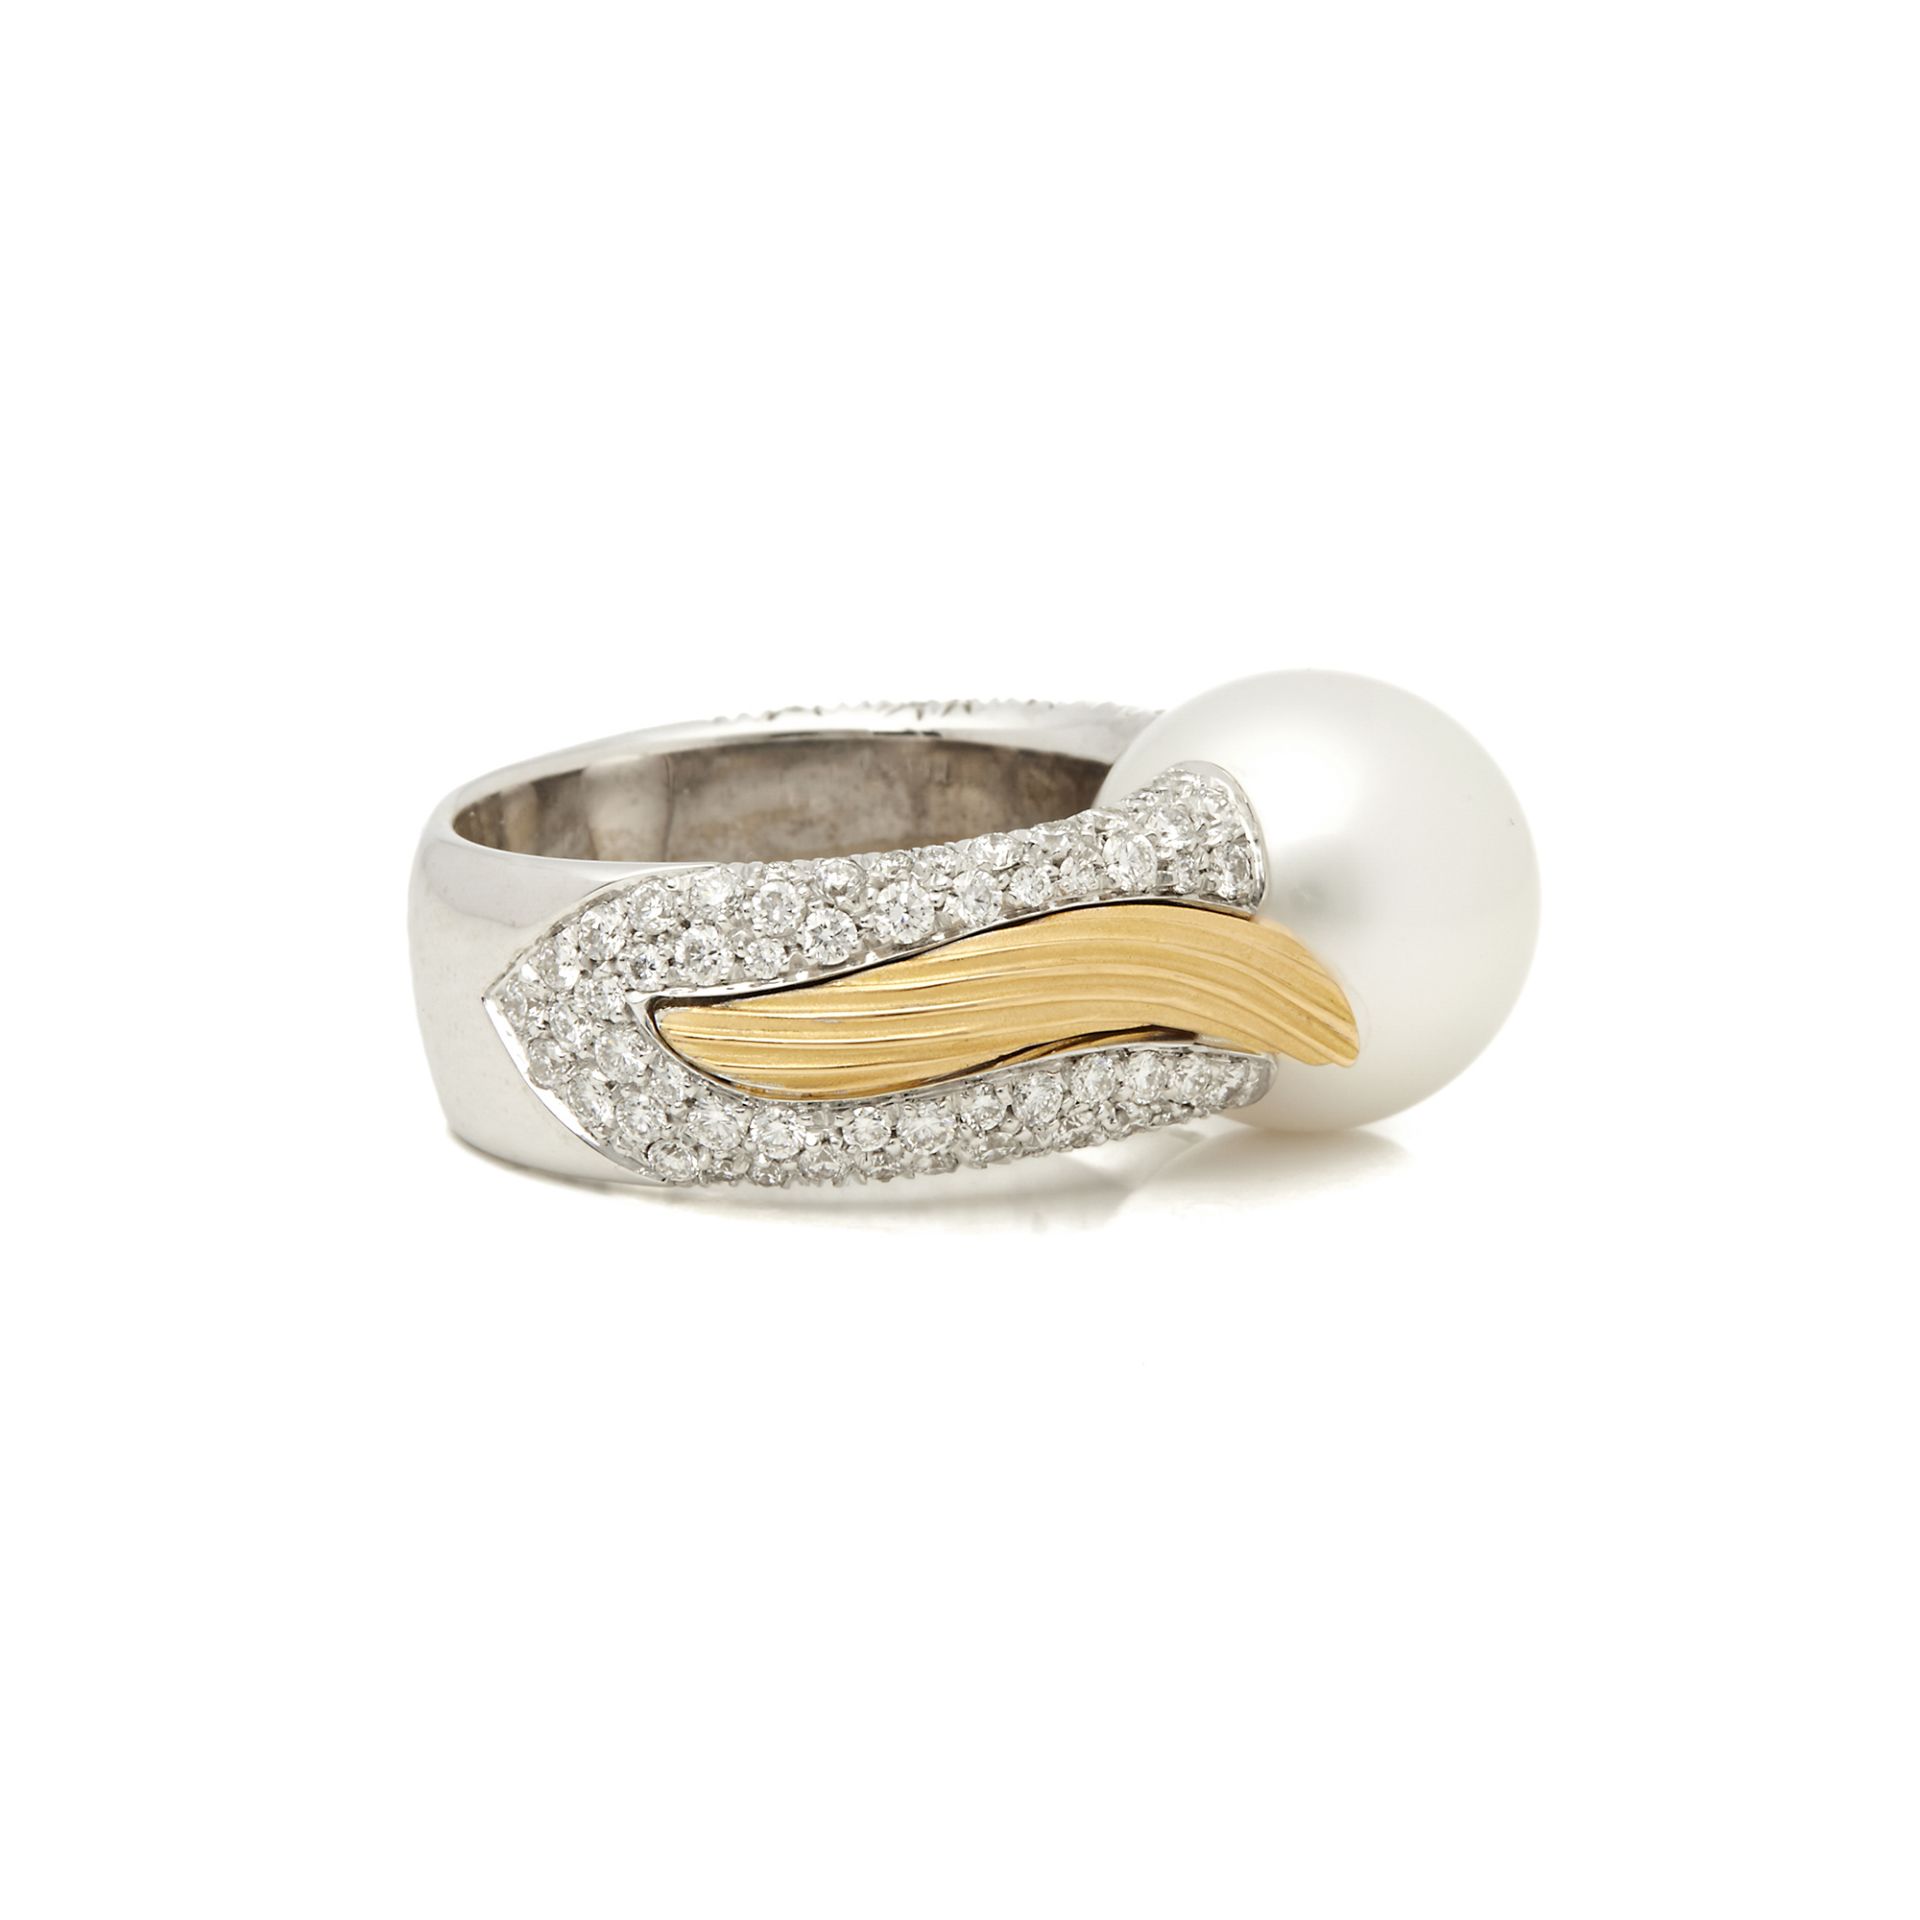 Mikimoto 18k White & Yellow Gold Akoya Pearl & Diamond Cocktail Ring - Image 4 of 7